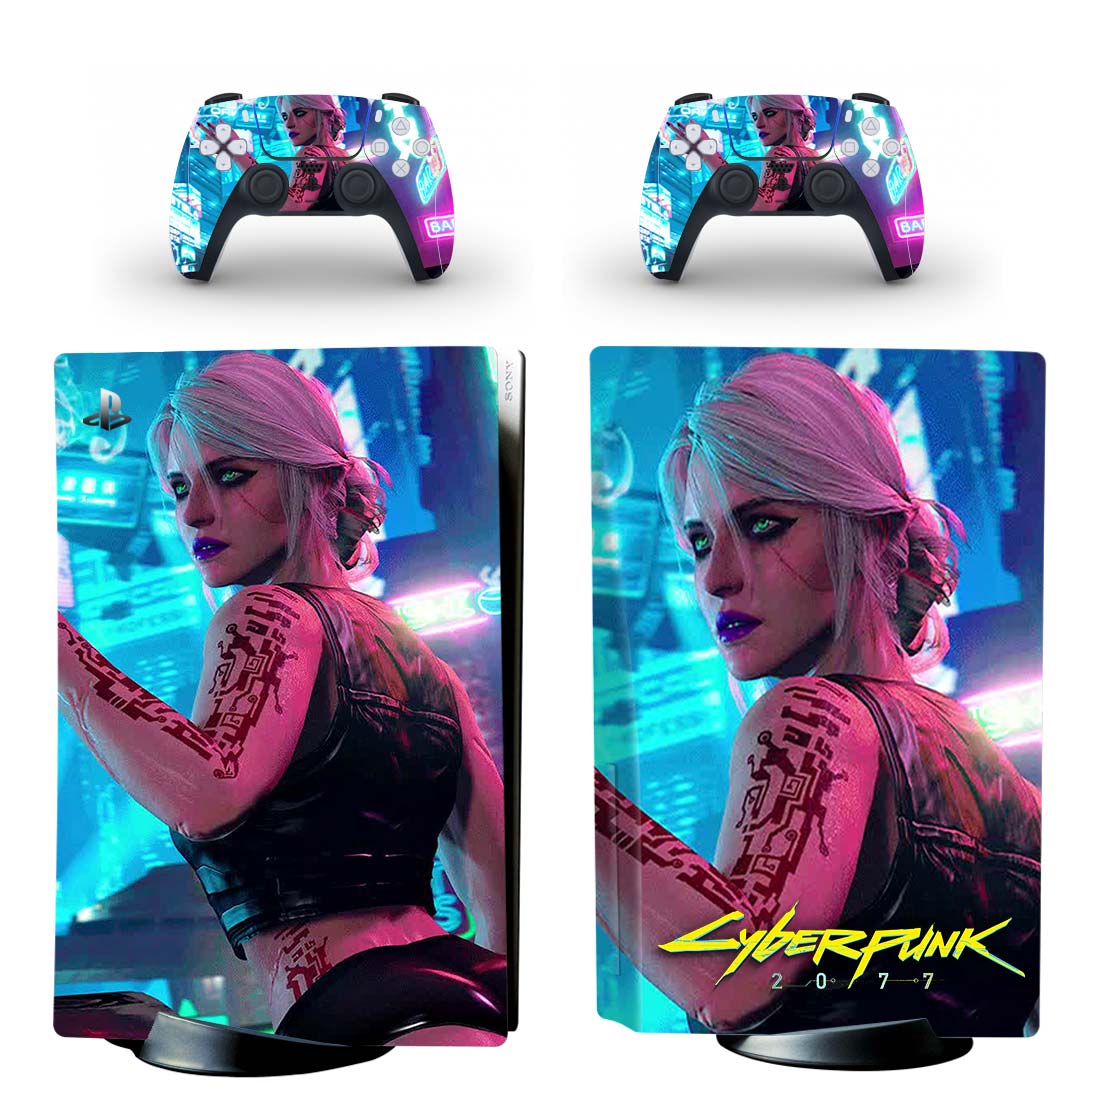 Cyberpunk 2077 PS5 Skin Sticker Design 2